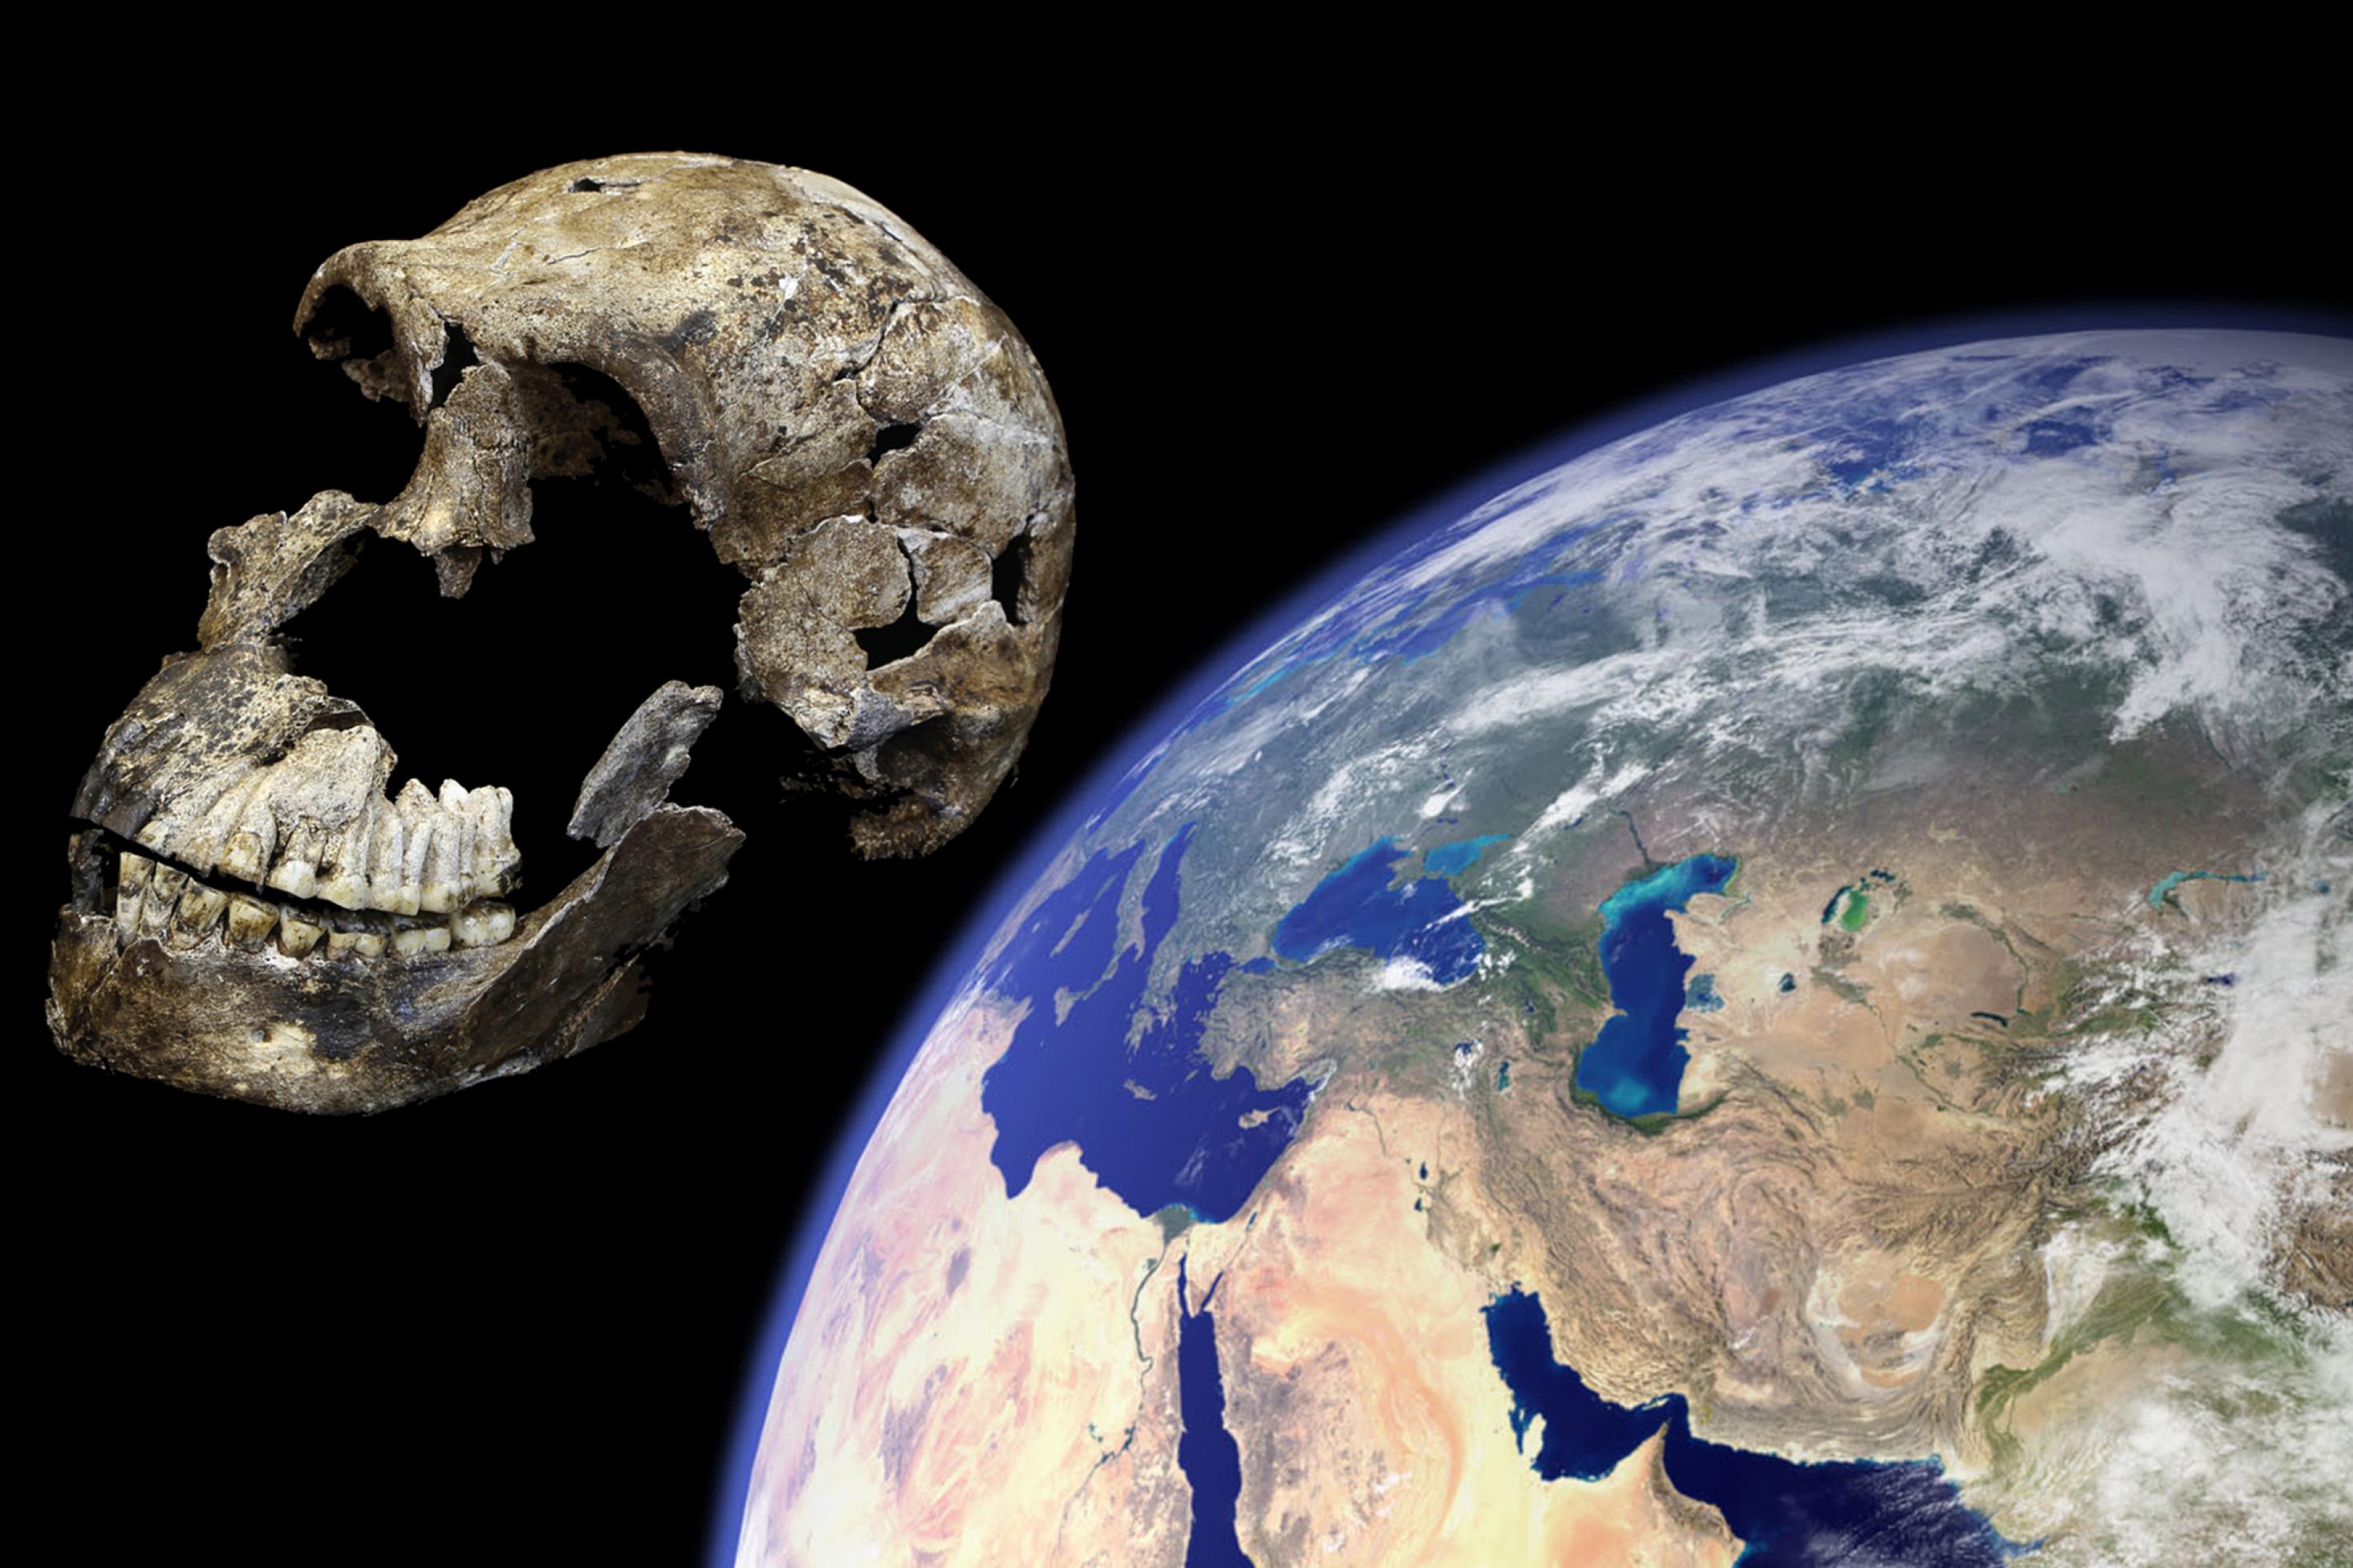 Vor schwarzem Hintergrund ist links der Schädel eines Urmenschen zu sehen, der in dieser Fotomontage vor einem Ausschnitt der Erdkugel, rechts im Bild, durch den Weltraum zu fliegen scheint.